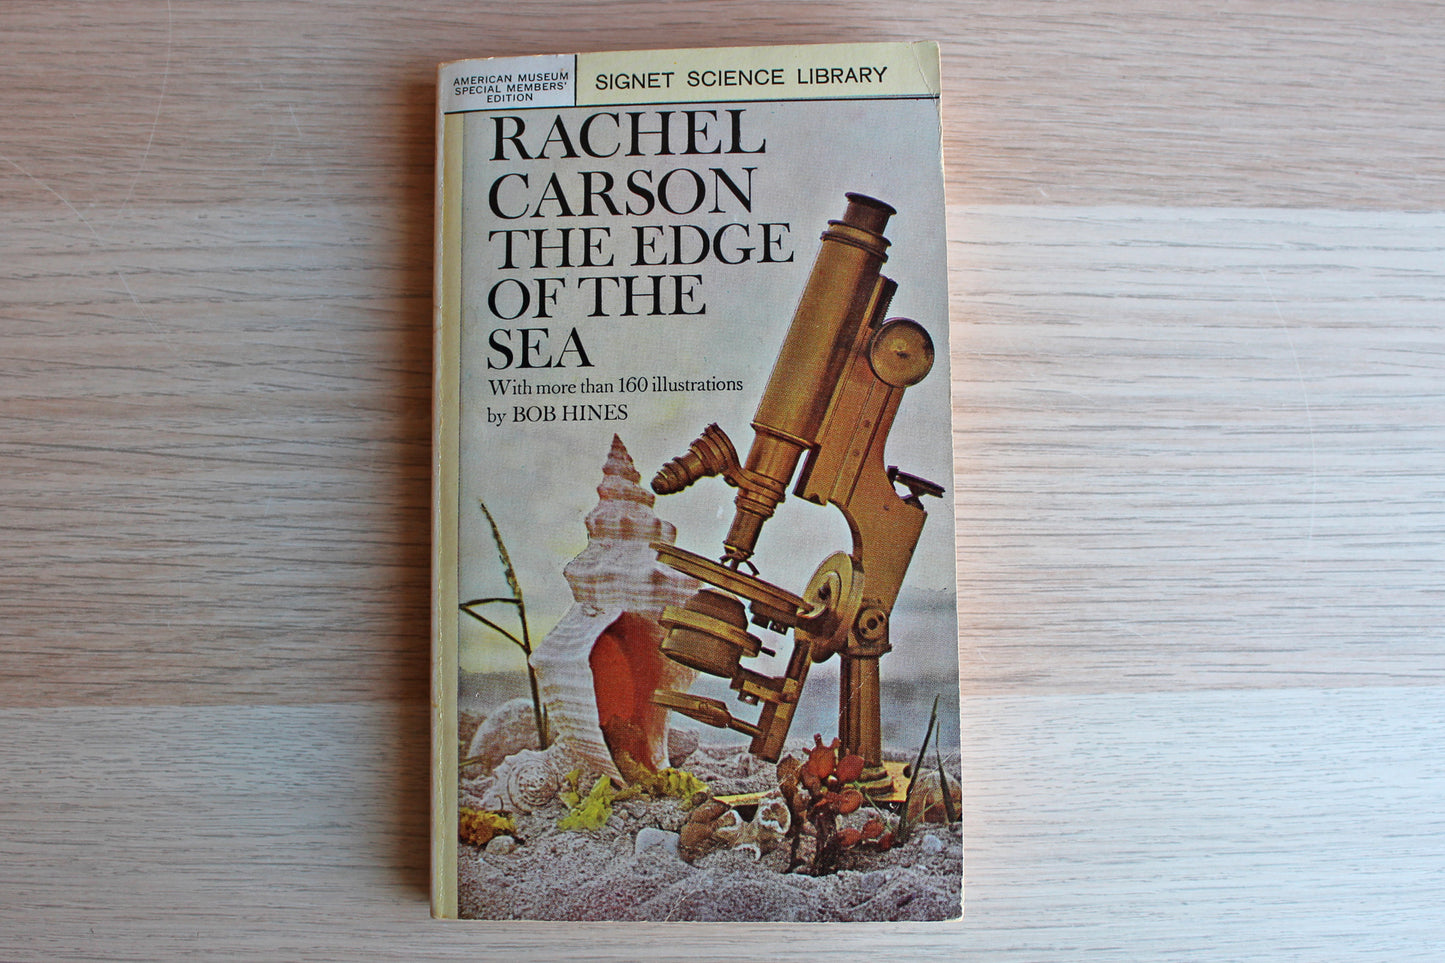 The Edge of the Sea by Rachel Carson